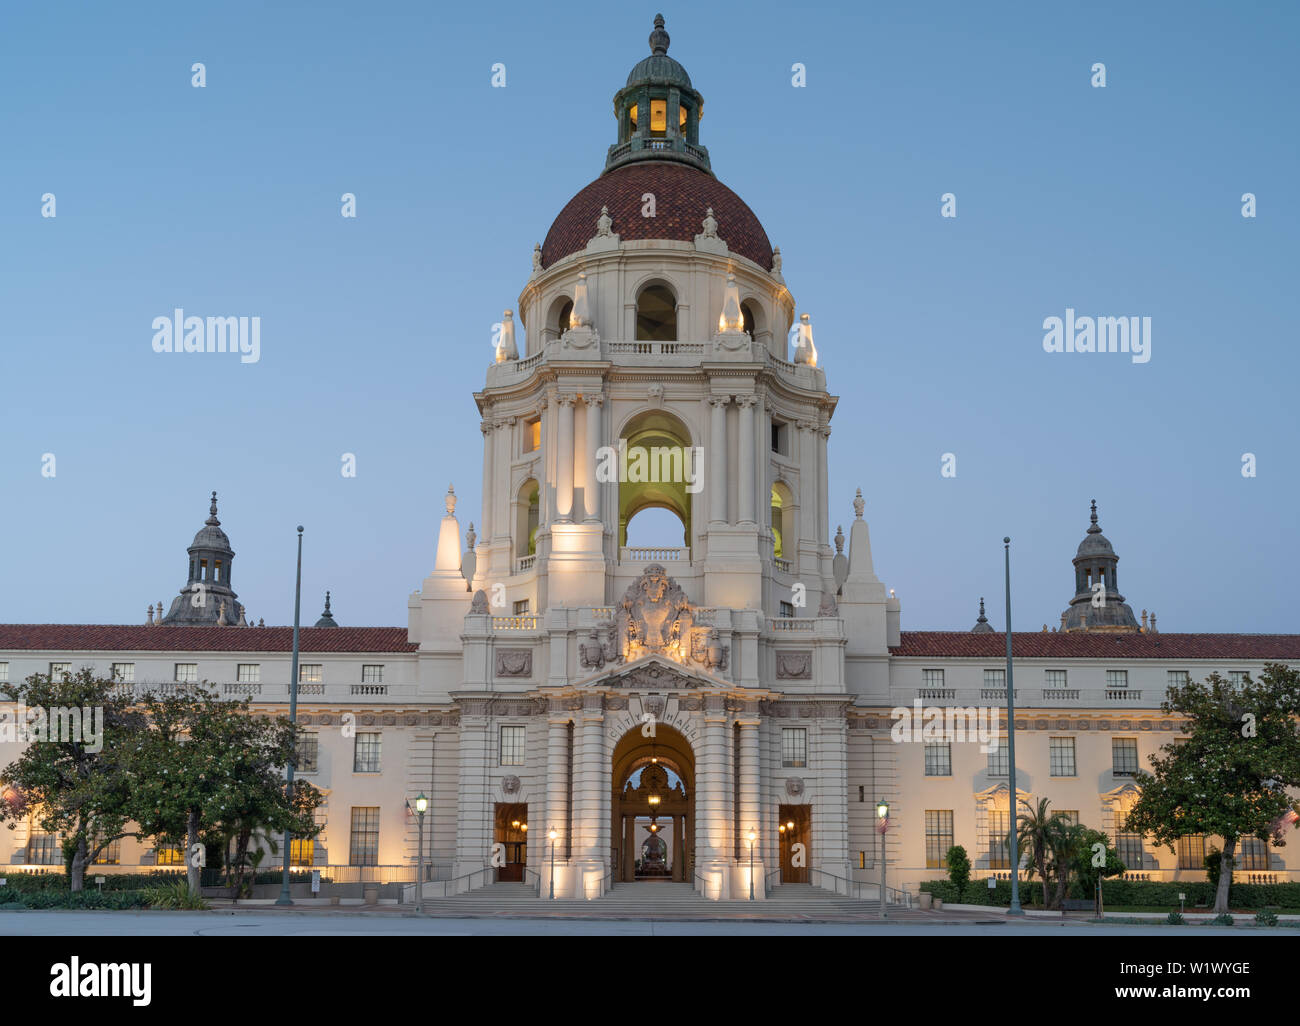 Un crépuscule vue de l'Hôtel de Ville de Pasadena emblématique dans le comté de Los Angeles. Cet édifice est inscrit au Registre national des lieux historiques. Banque D'Images